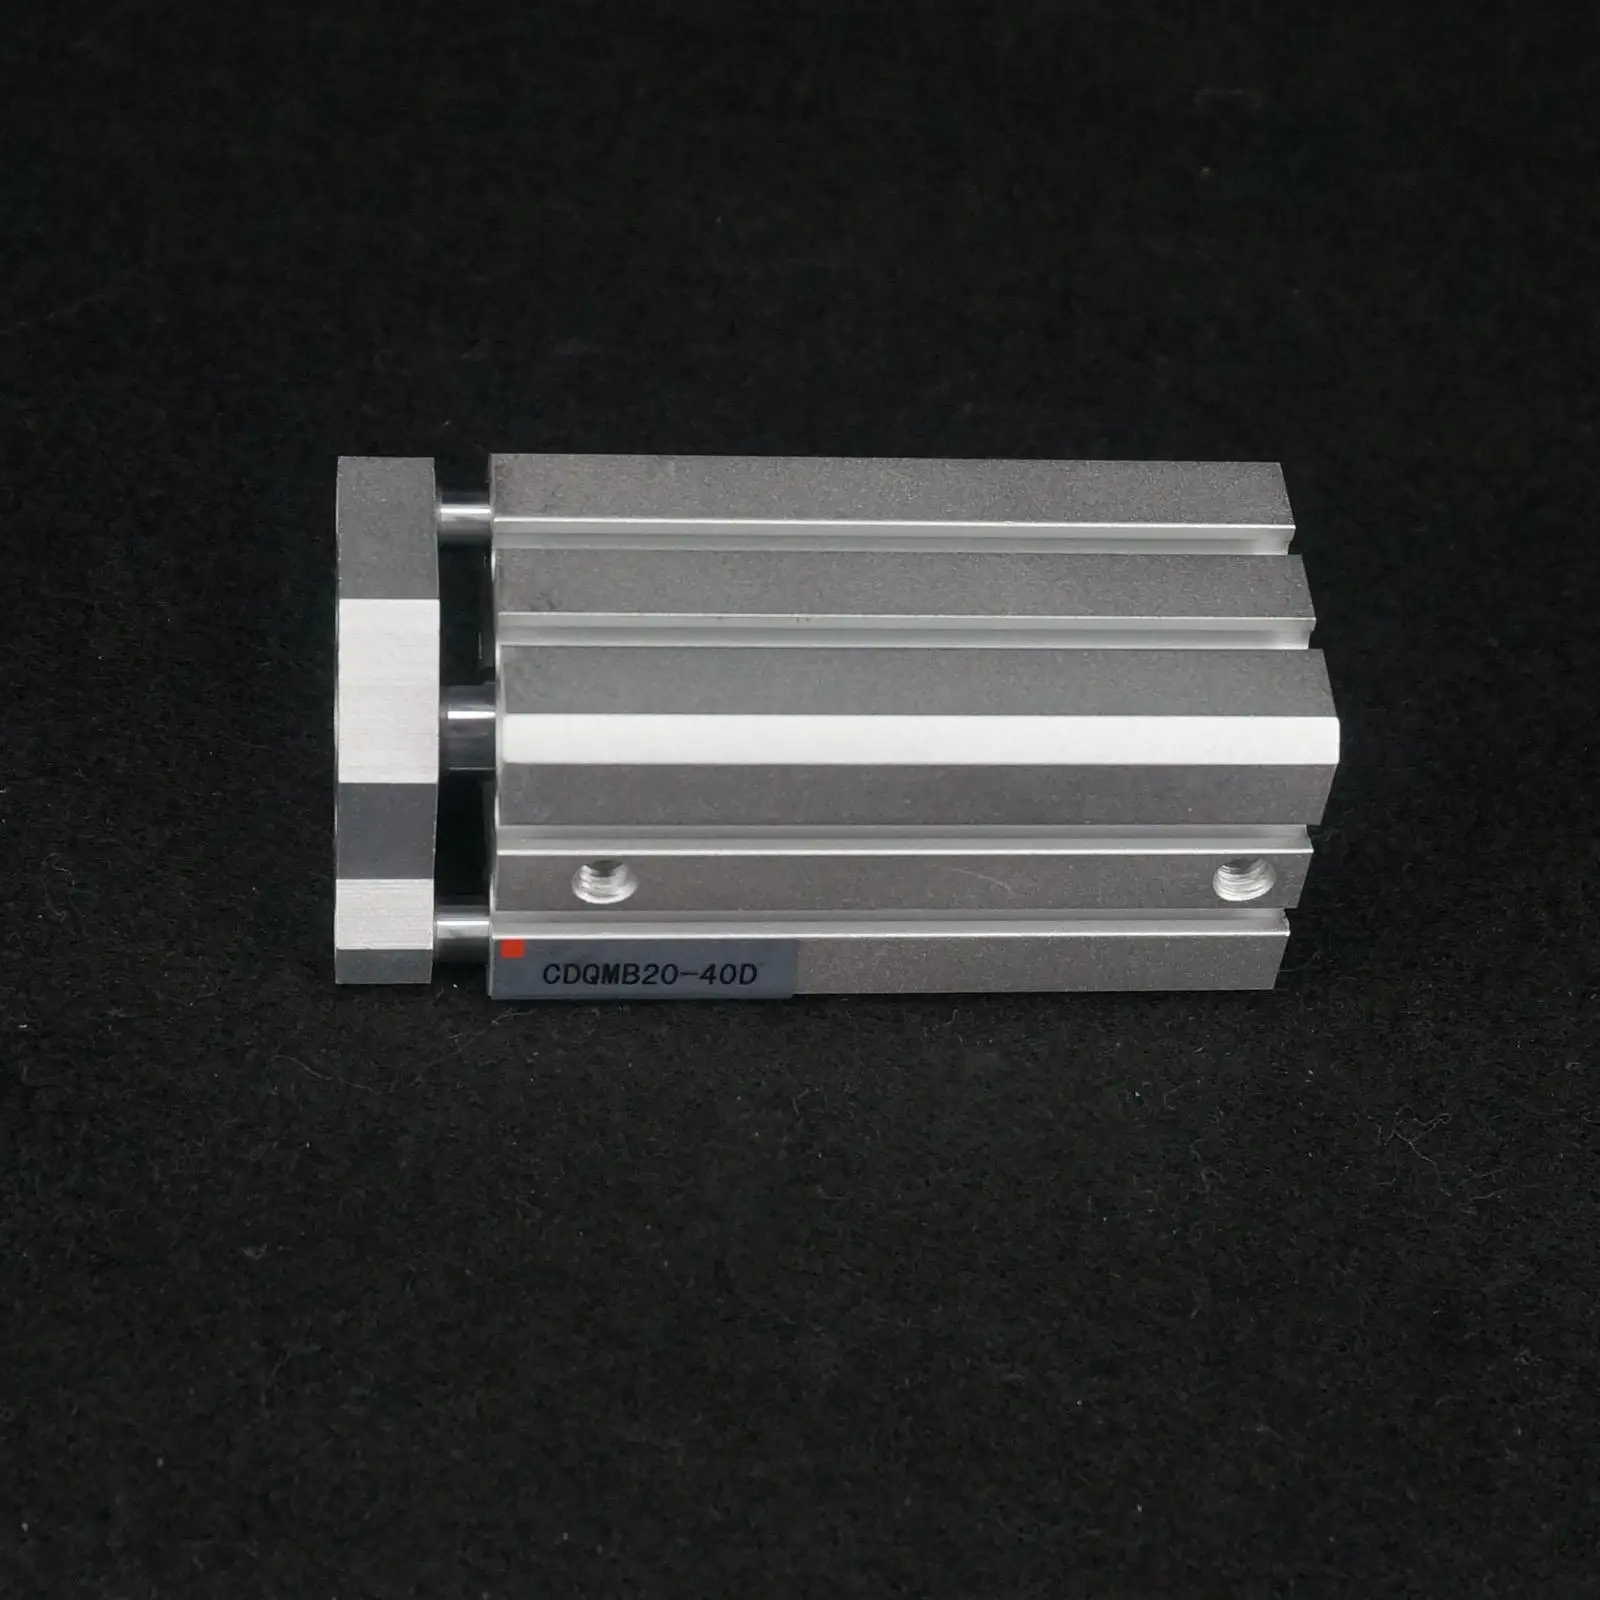 Vŕtania 20 mm Zdvih 40 mm Zabudovaný Magnet dvojčinné Sprievodca Rod CDQMB20-40 Kompaktný Valca . ' - ' . 1